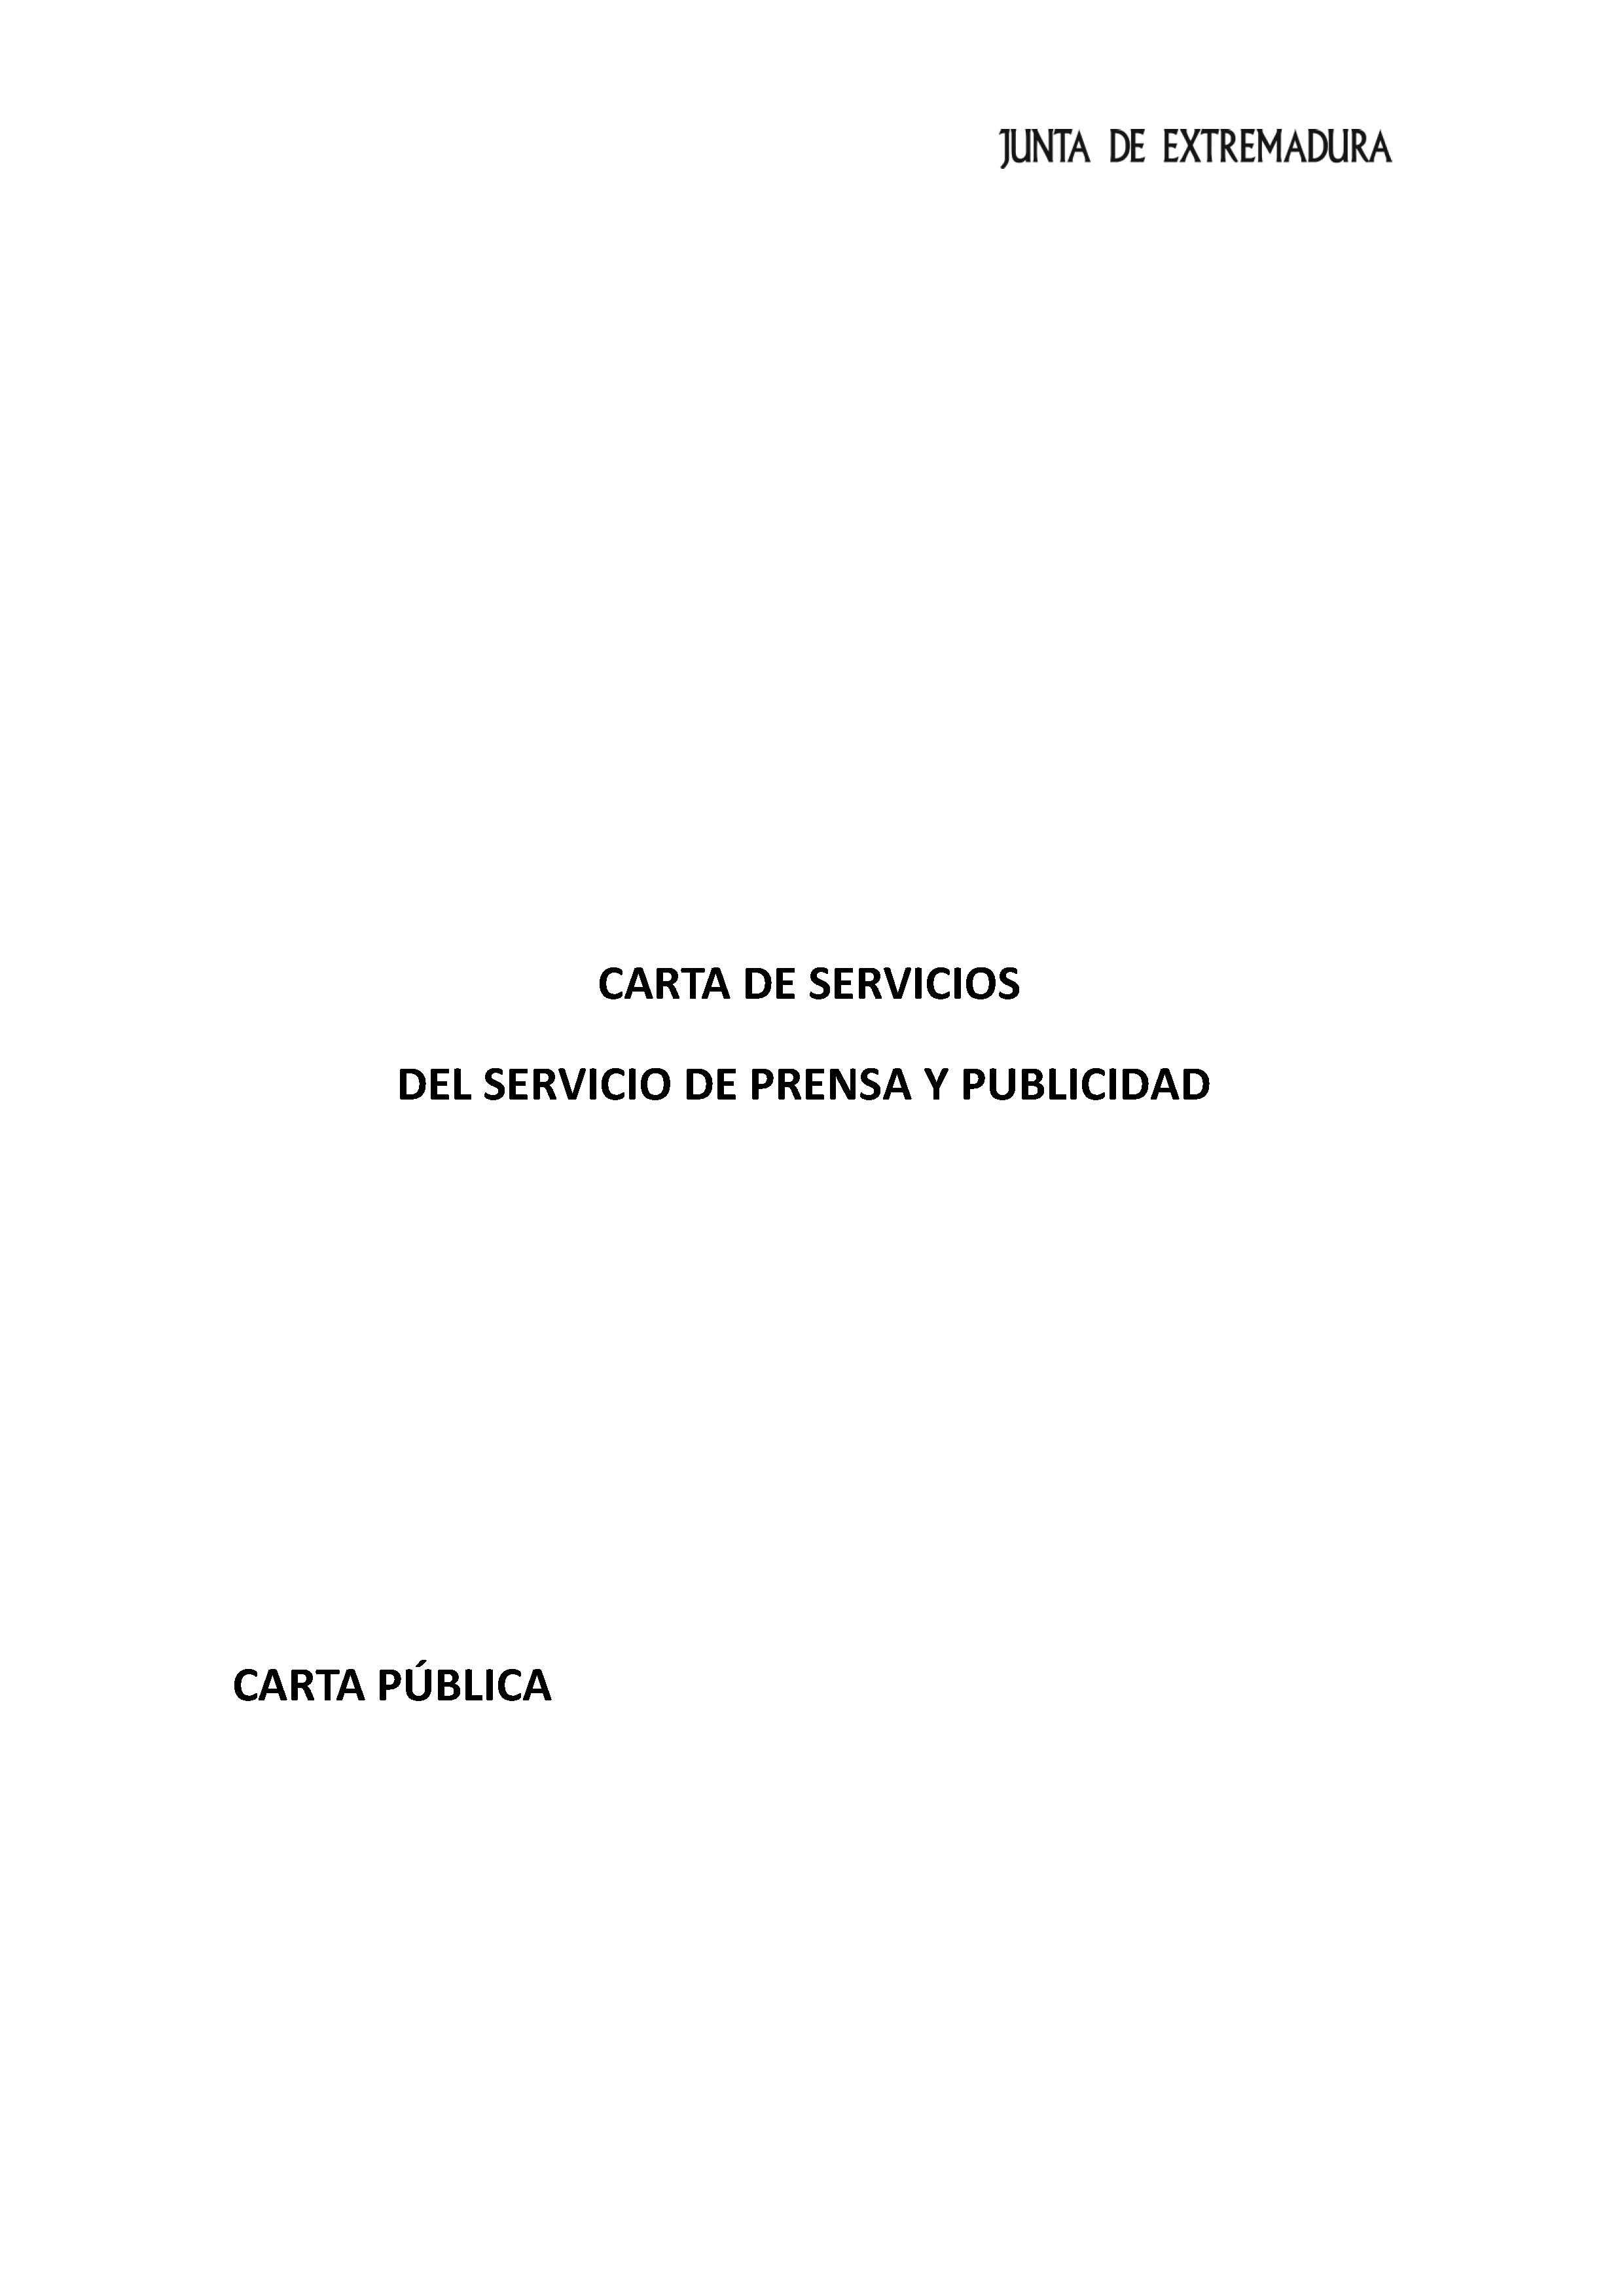 CARTA DE SERVICIOS Pag 1